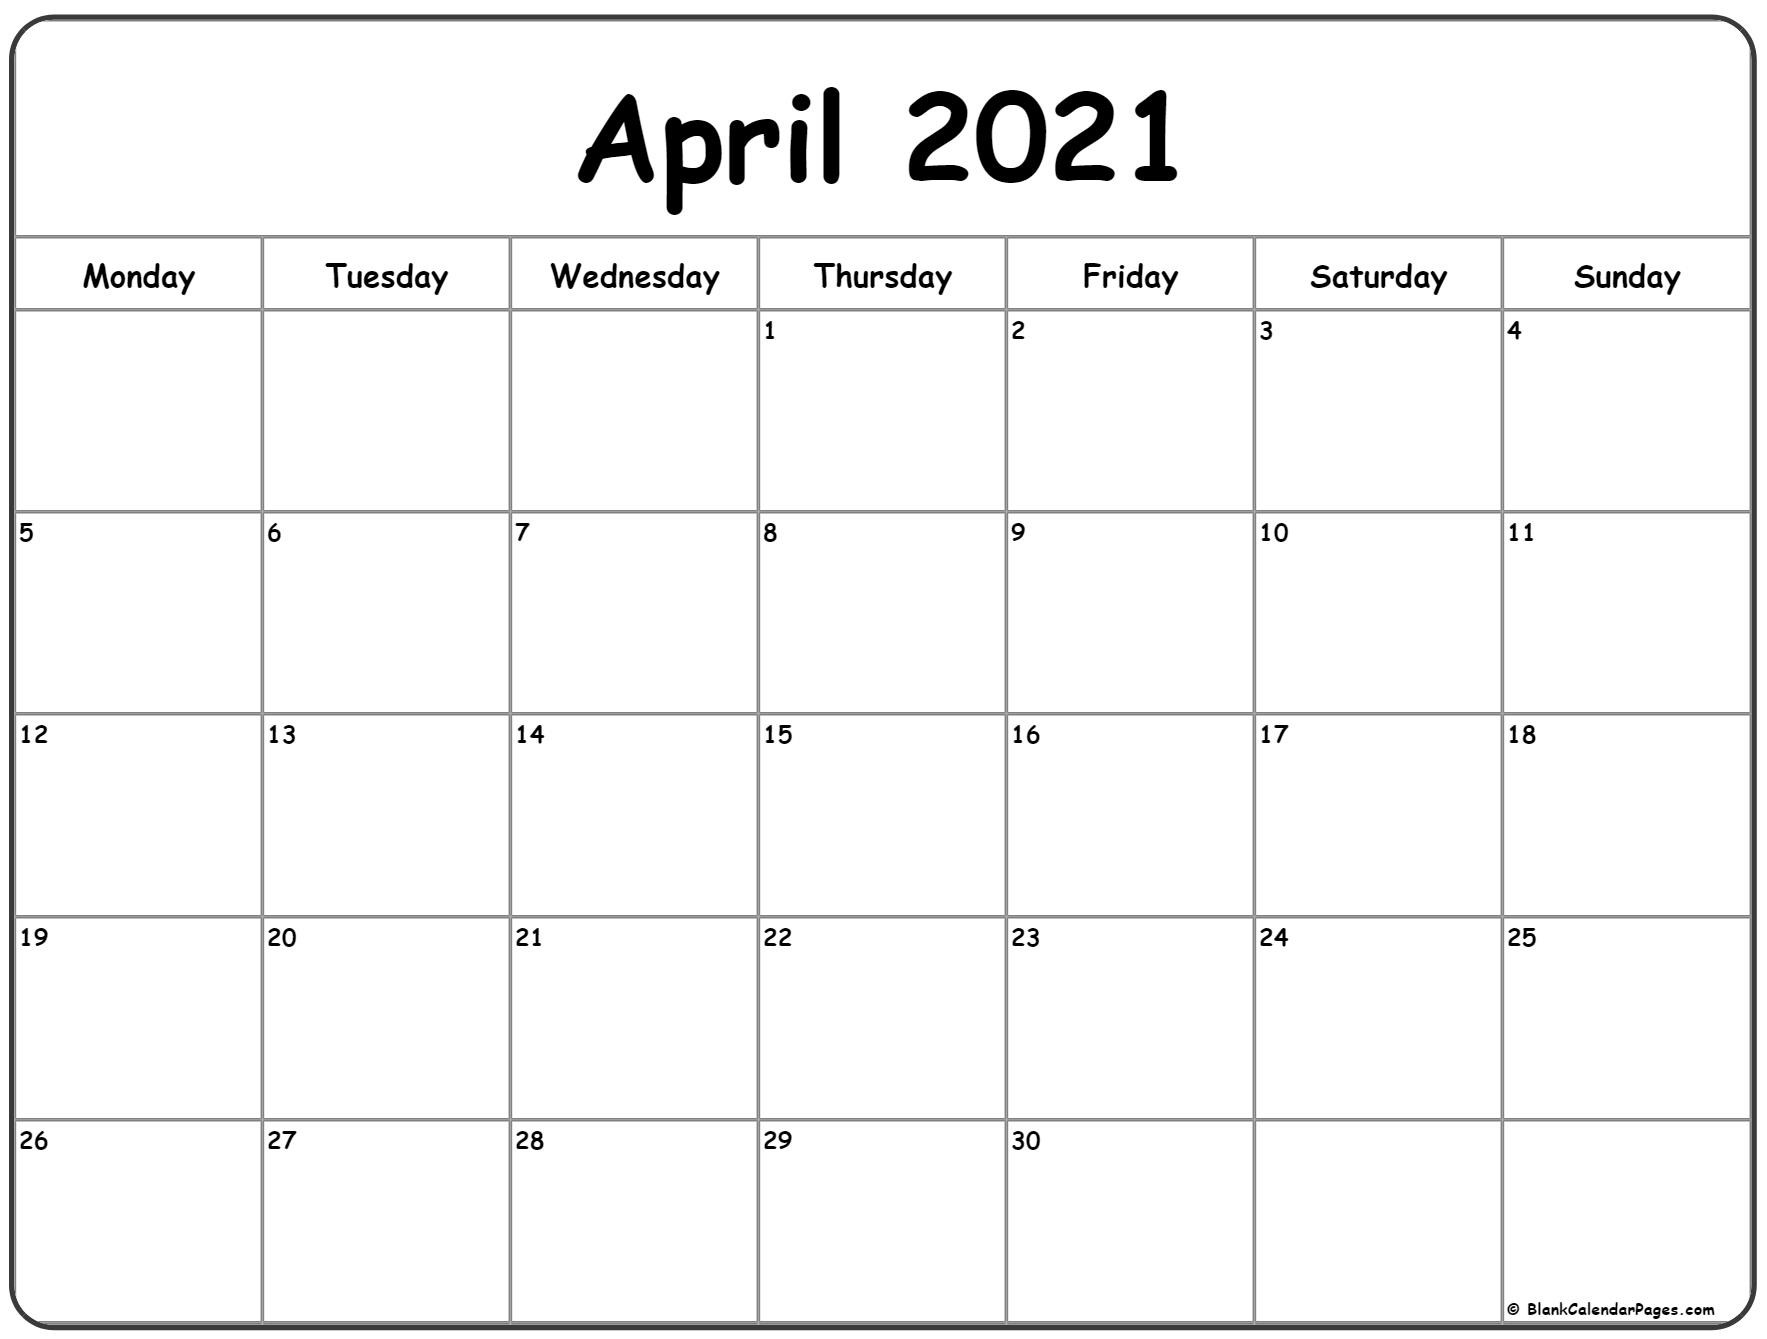 April 2021 Monday Calendar | Monday To Sunday-Saturday Through Sunday Calendar